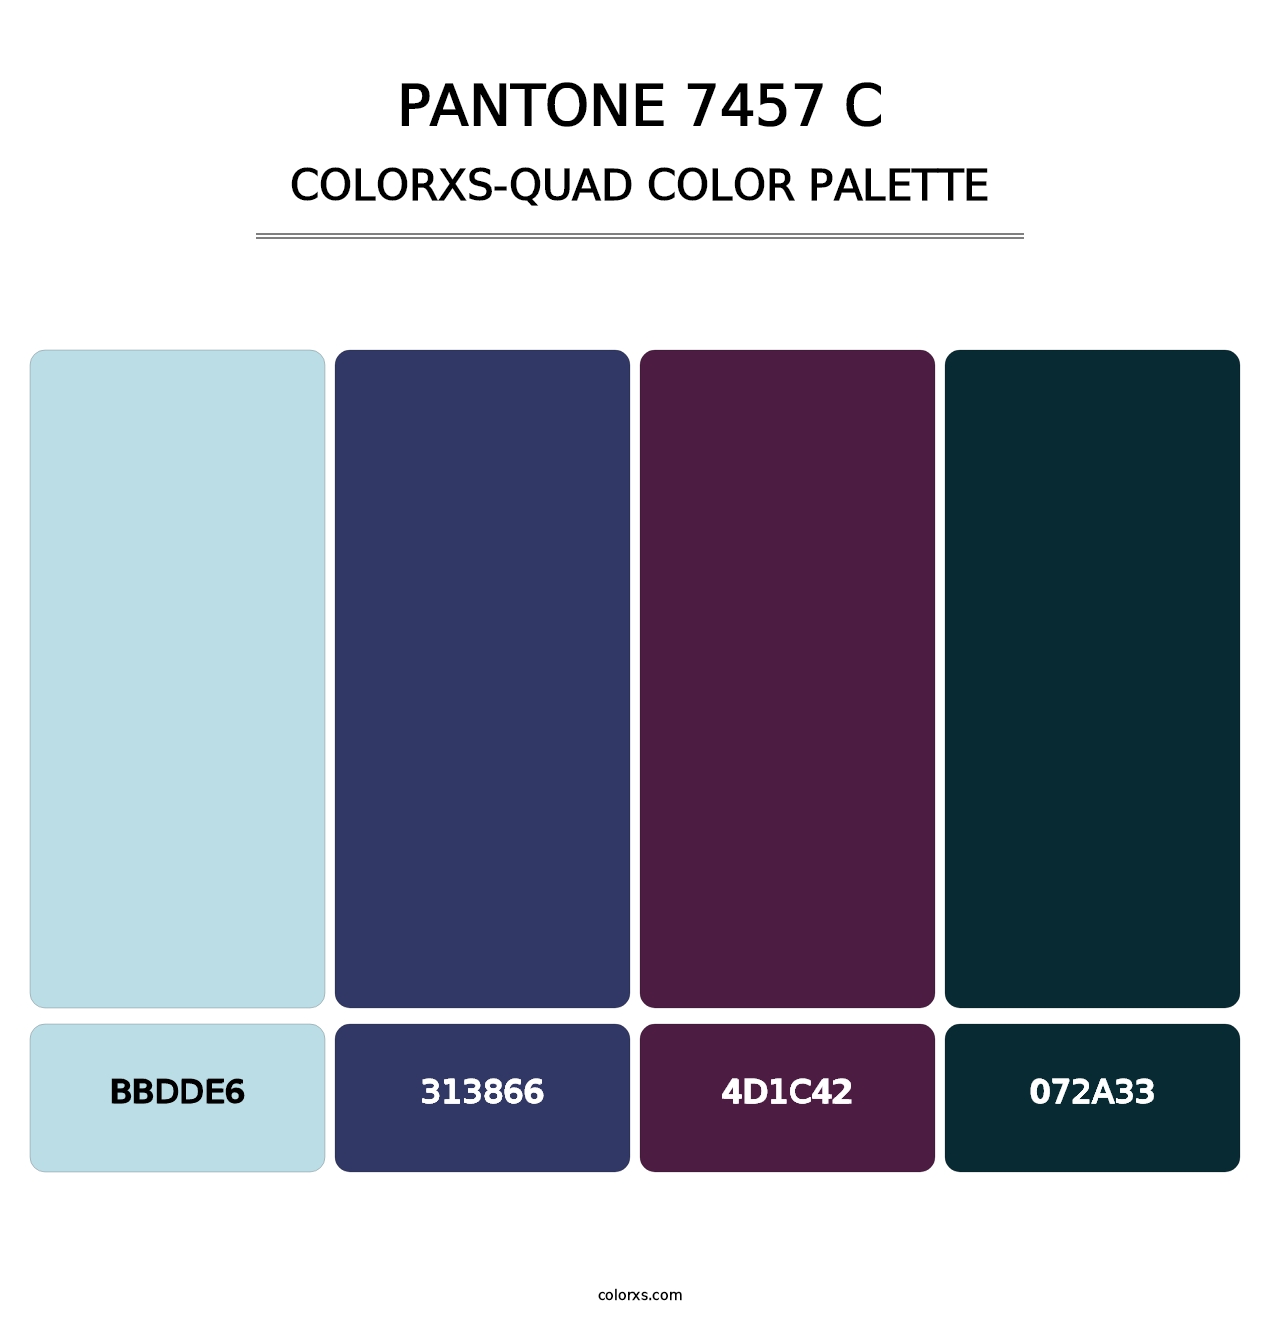 PANTONE 7457 C - Colorxs Quad Palette